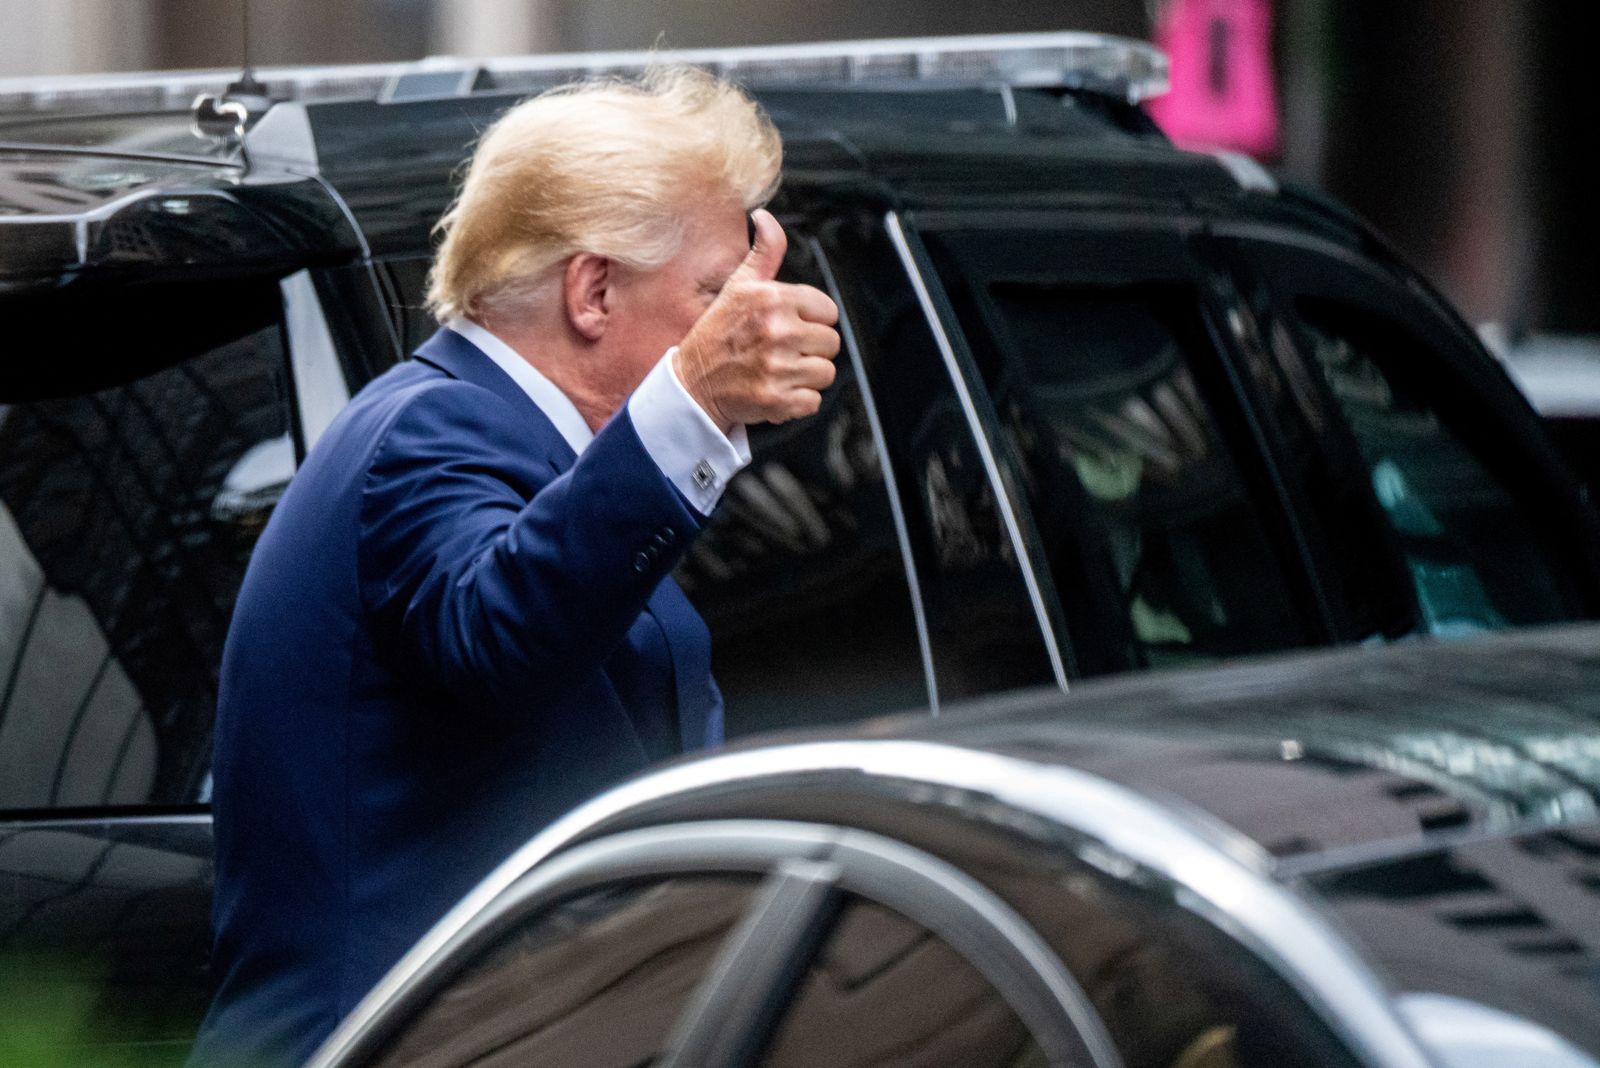 الرئيس الأميركي السابق دونالد ترمب أثناء مغادرة برجه في مدينة نيويورك- 10 أغسطس 2022 - REUTERS